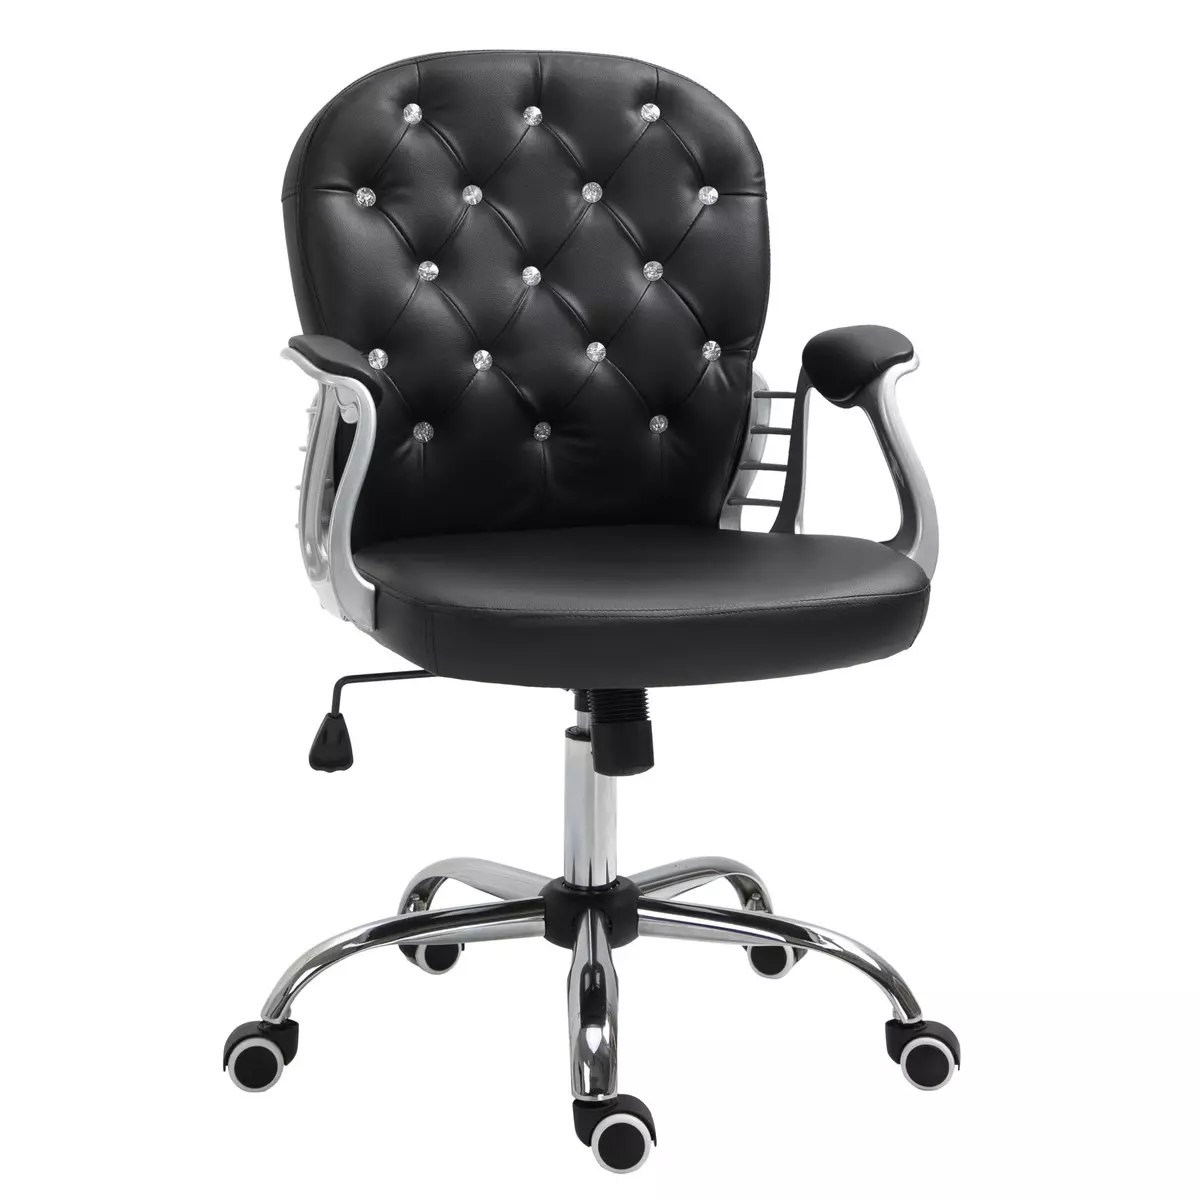 HOMCOM Vinsetto Fauteuil de bureau chaise de bureau ergonomique réglable roulettes pivotantes boutons strass revêtement synthétique PU 59,5L x 60,5l x 95-105H cm noir